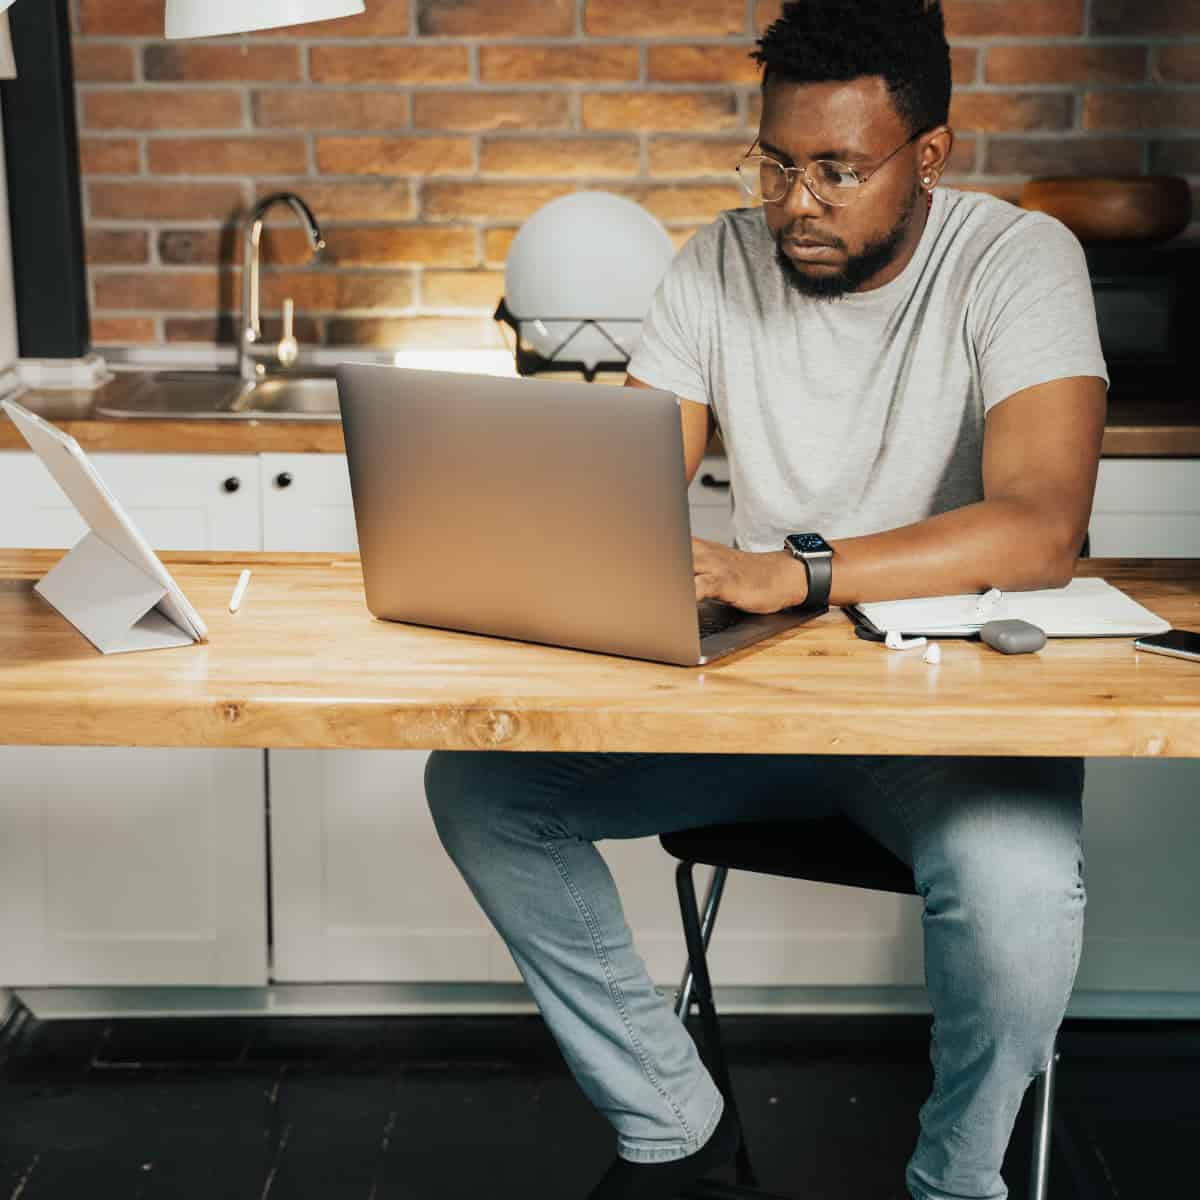 Man sitting at desk working on laptop.